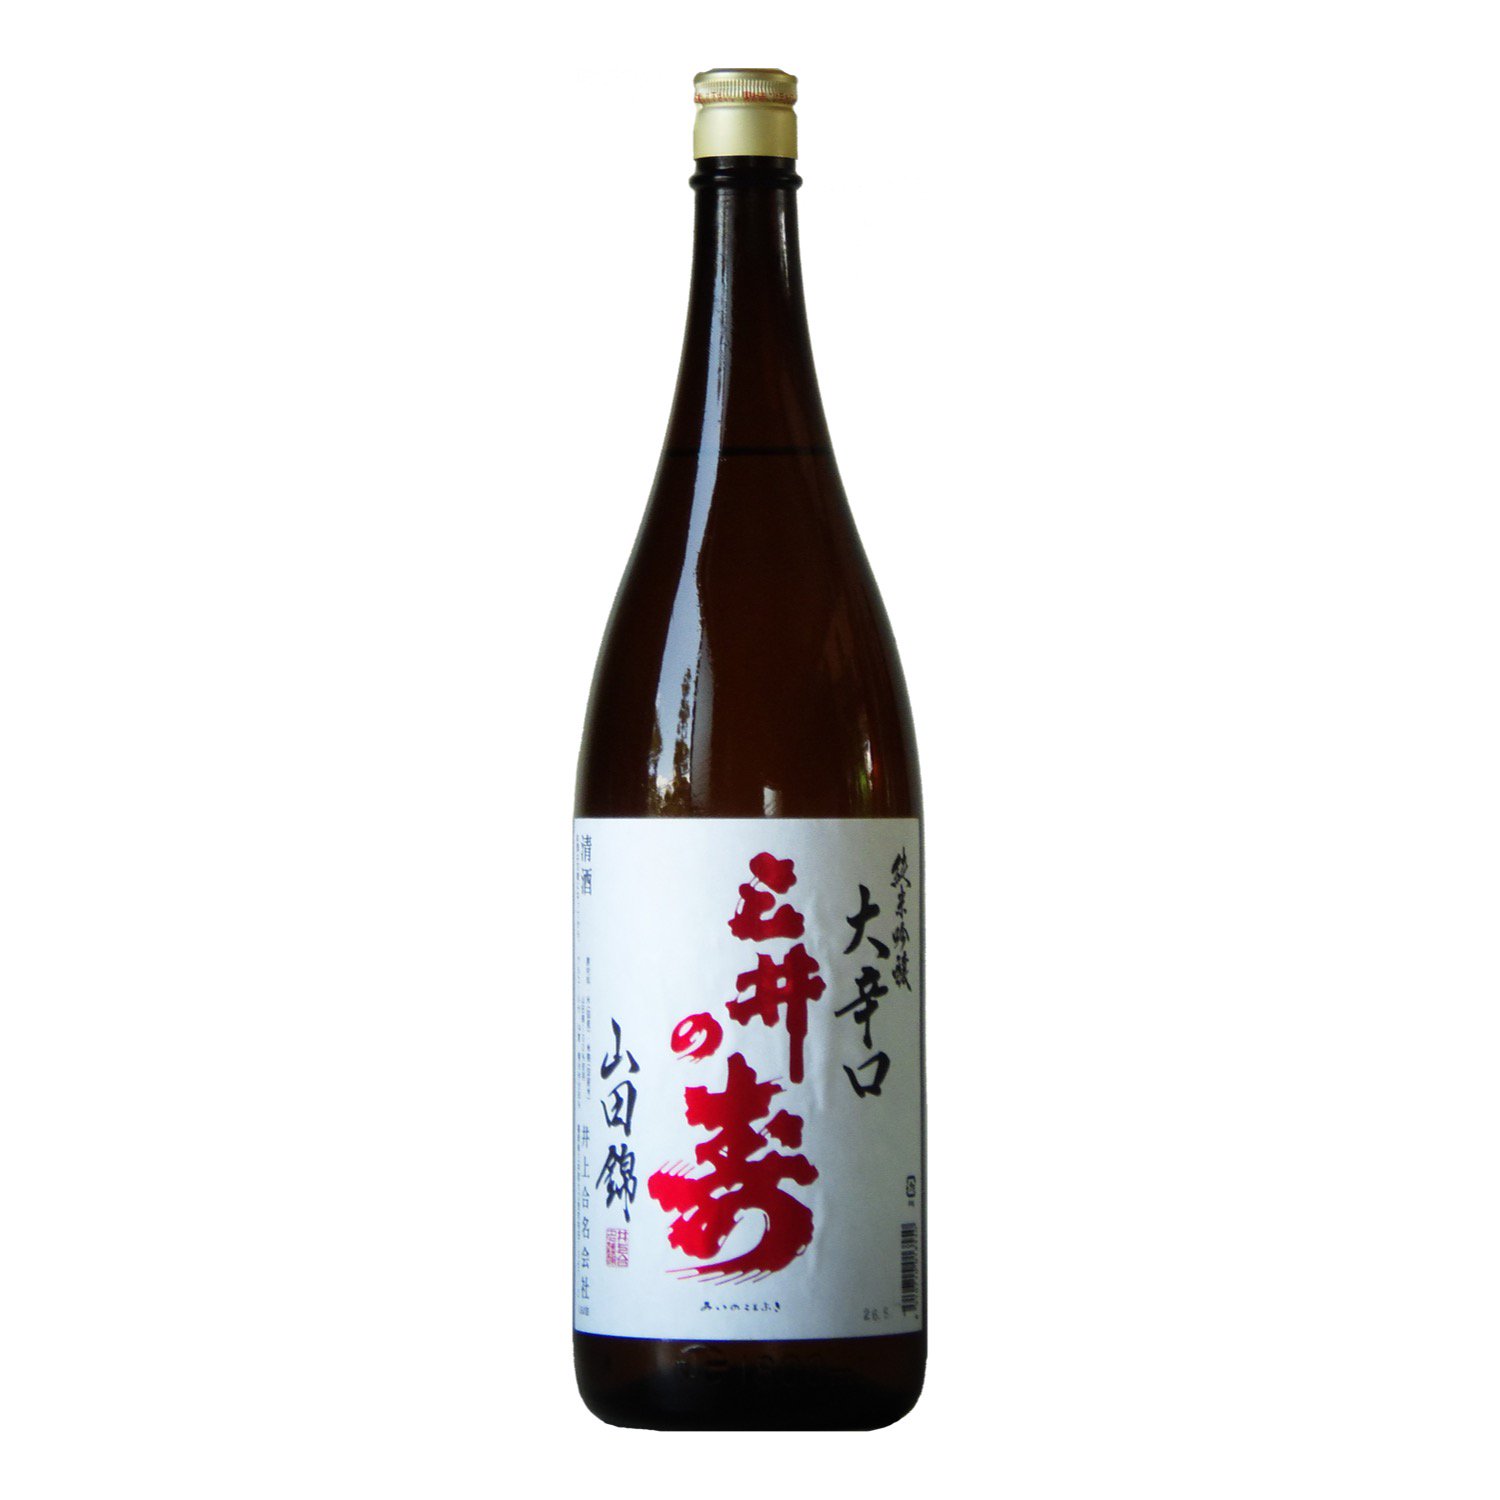 るみ子の酒 特別純米 9号酵母 1800ml